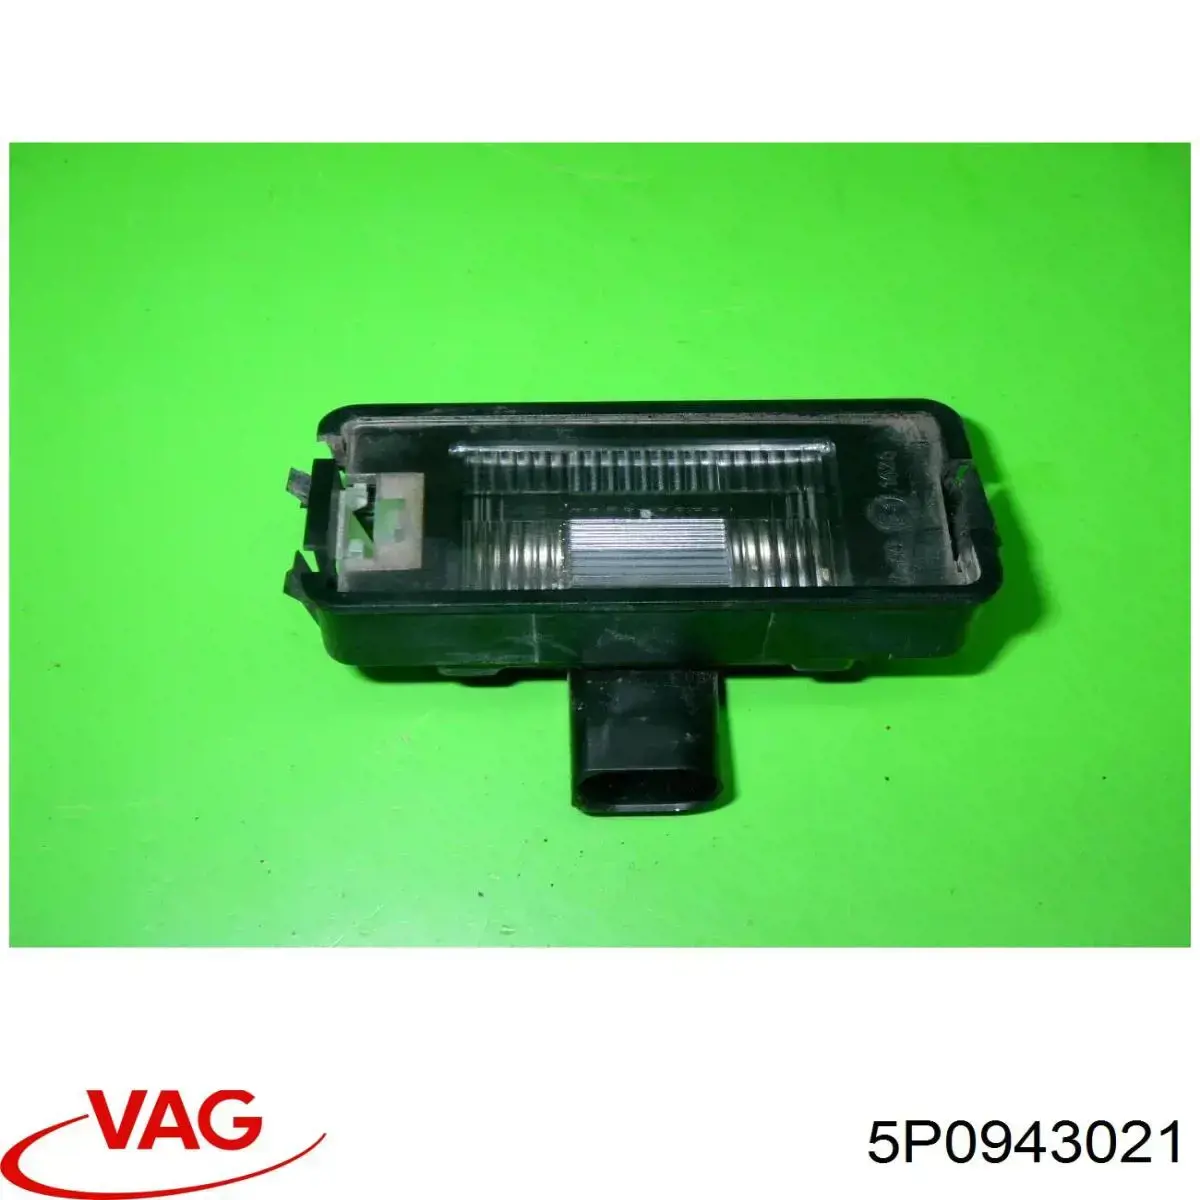 5P0943021 VAG lanterna da luz de fundo de matrícula traseira